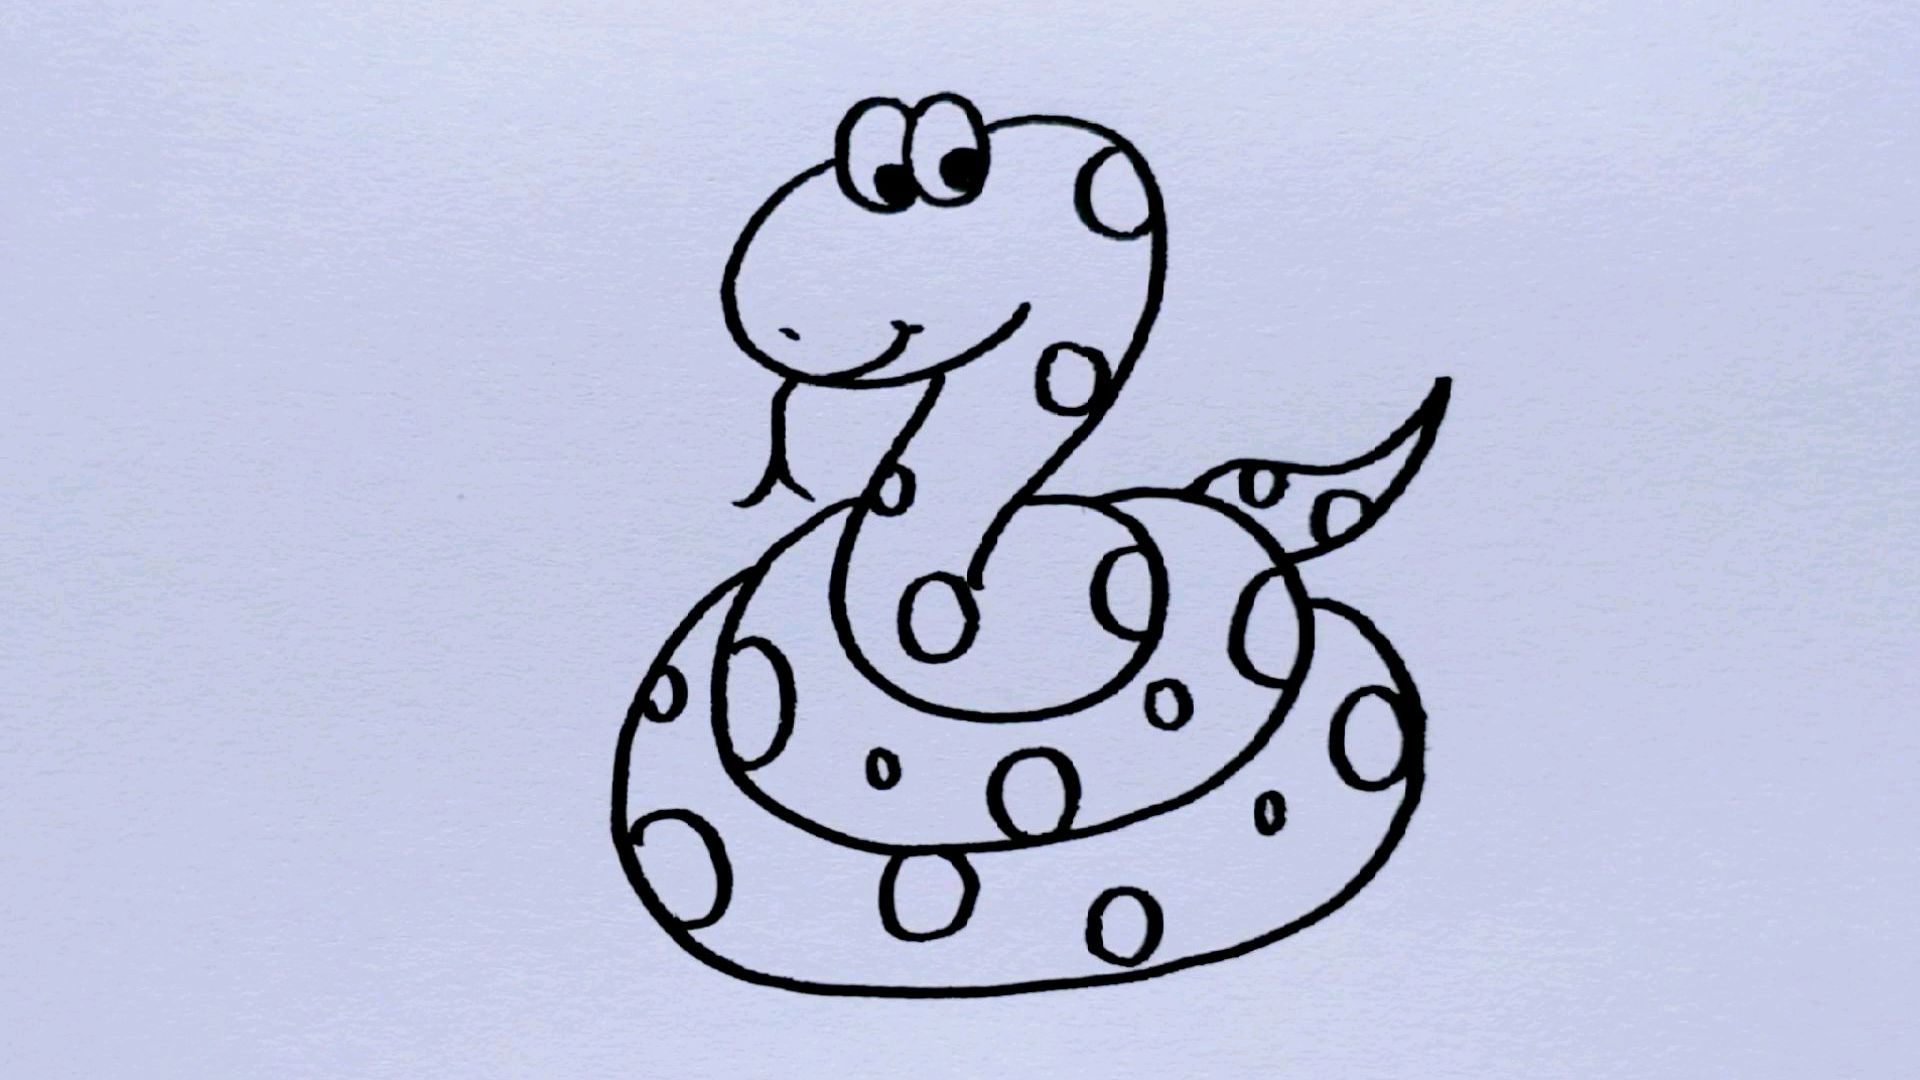 大蟒蛇的简单画法